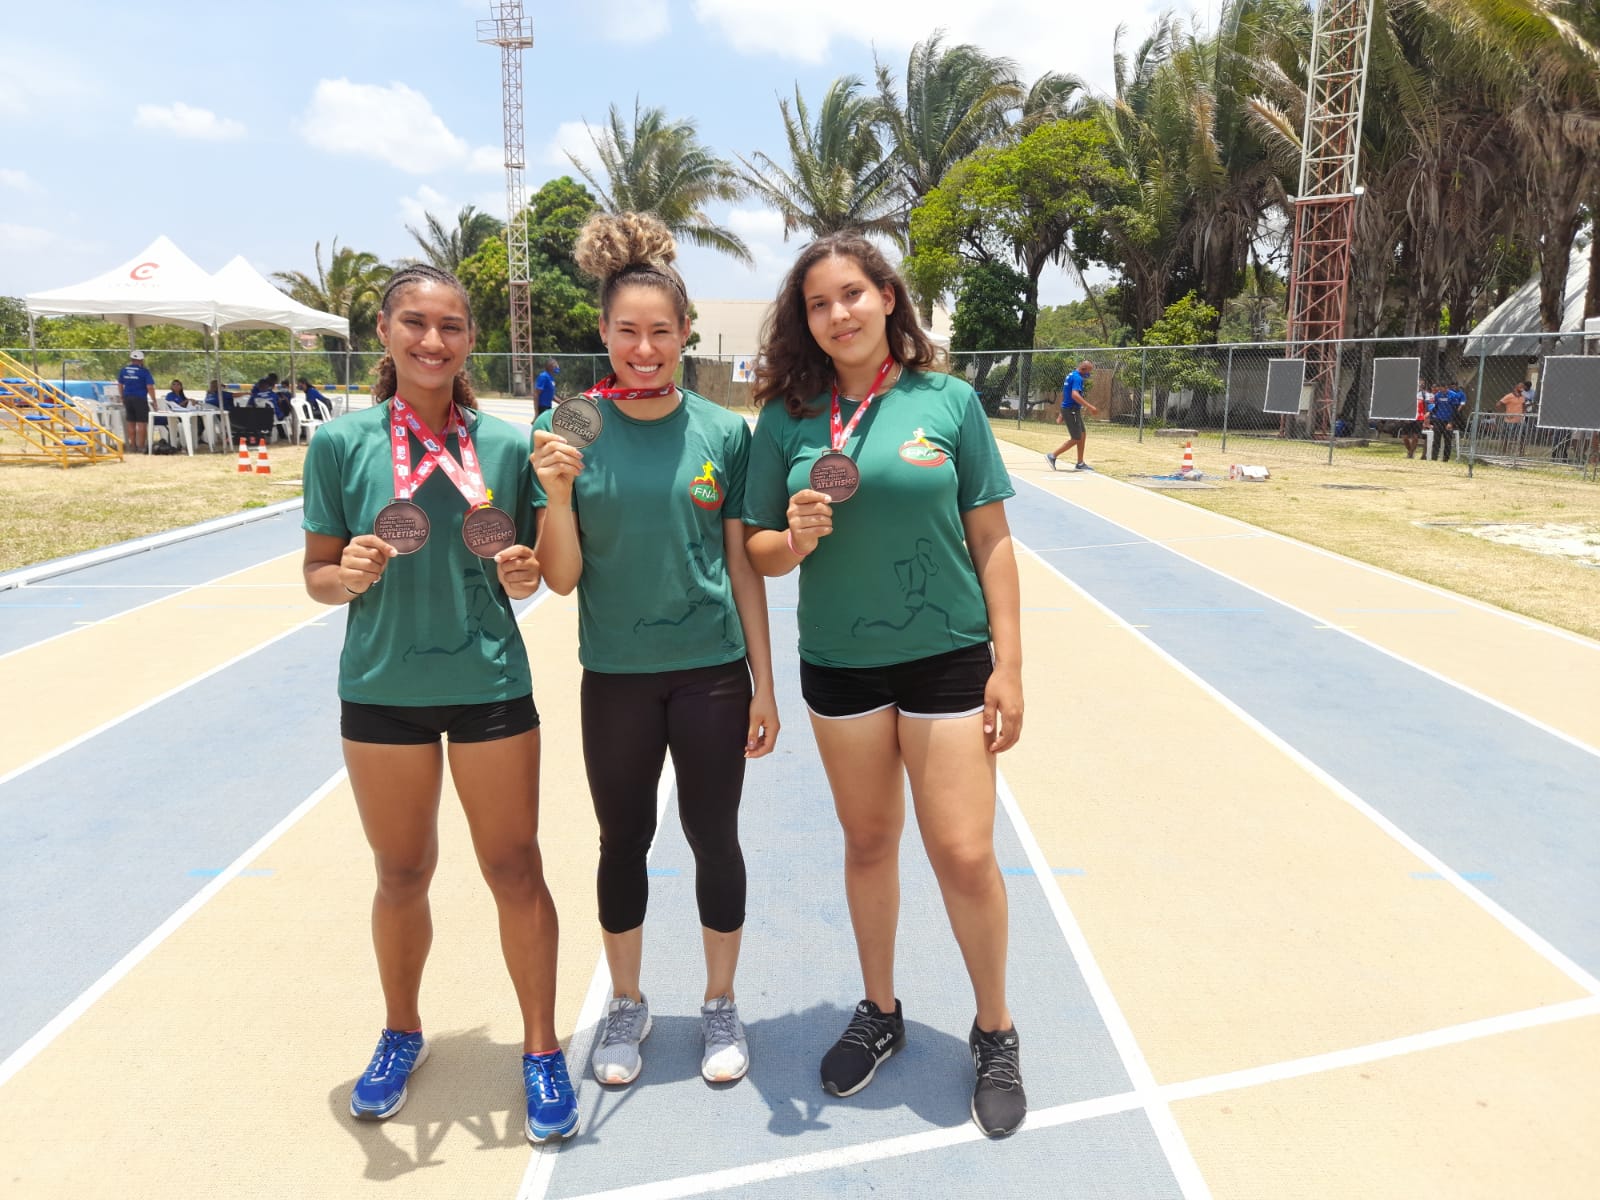 Cerrocoraenses conquistam 04 medalhas no Norte Nordeste adulto de atletismo em São Luis-MA